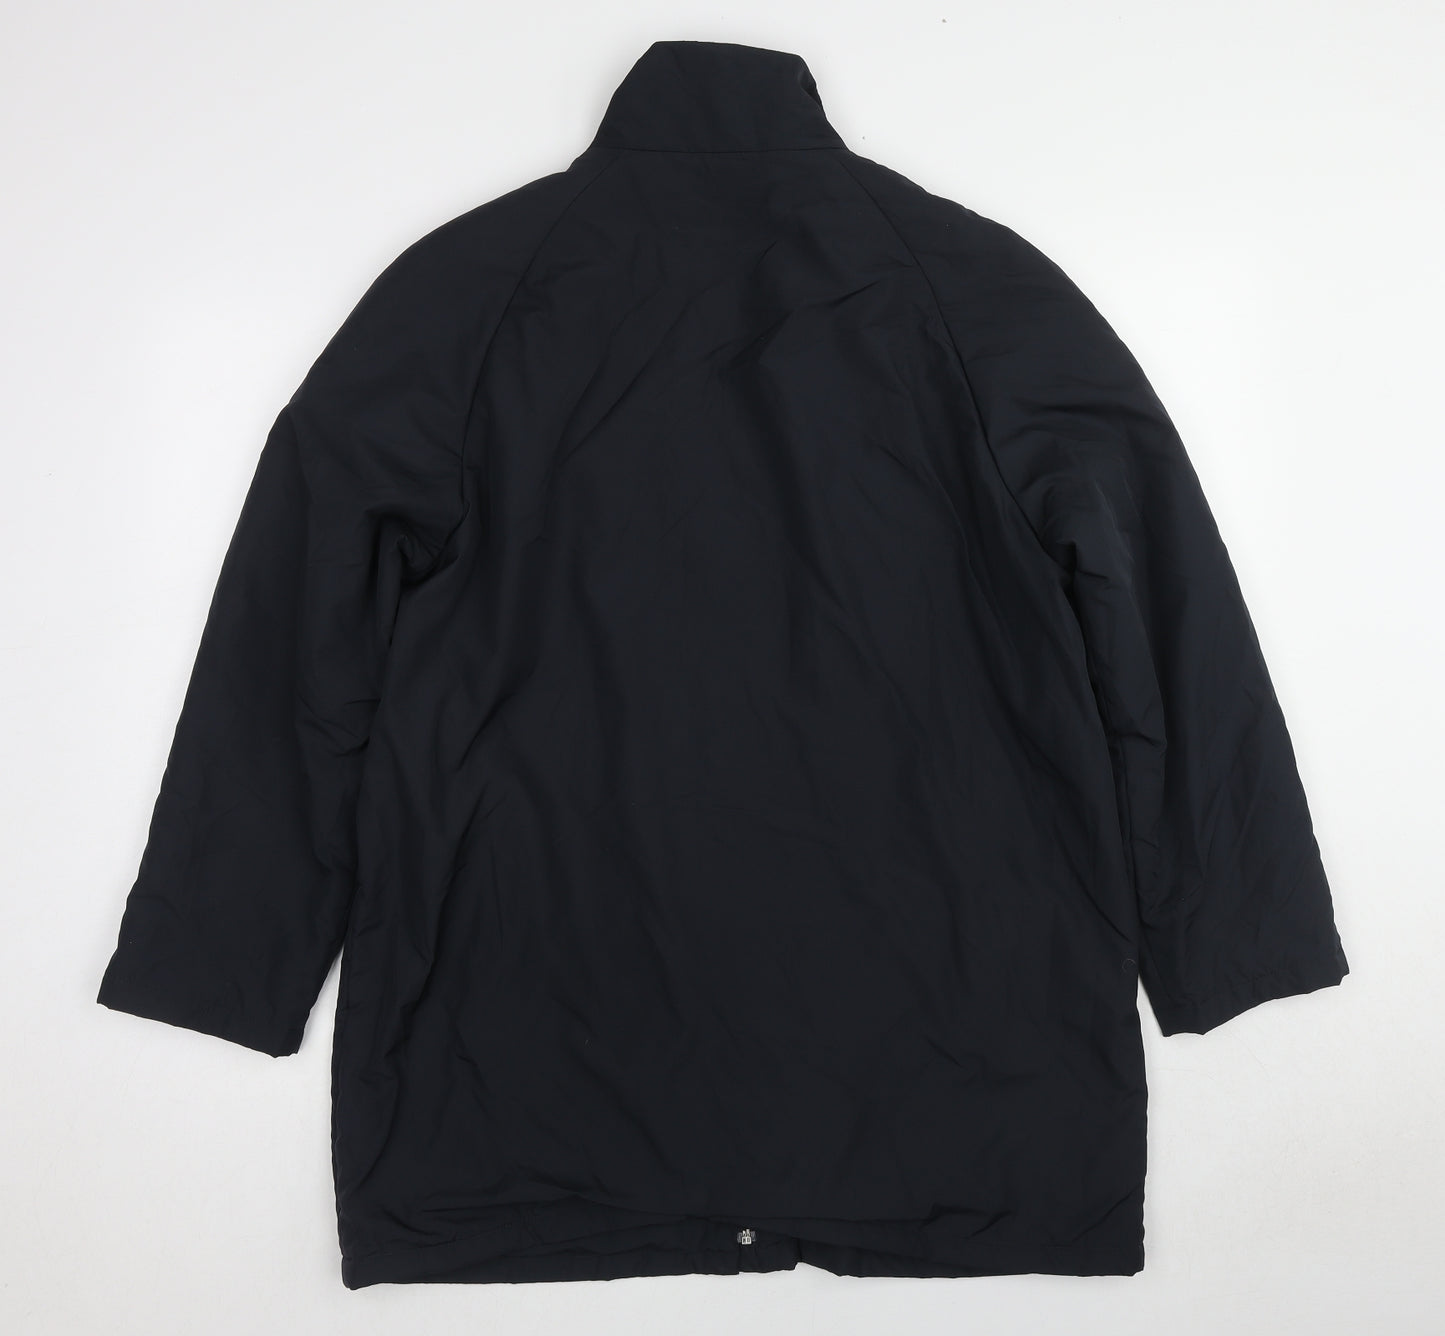 Dannimac Mens Black Jacket Coat Size L Zip